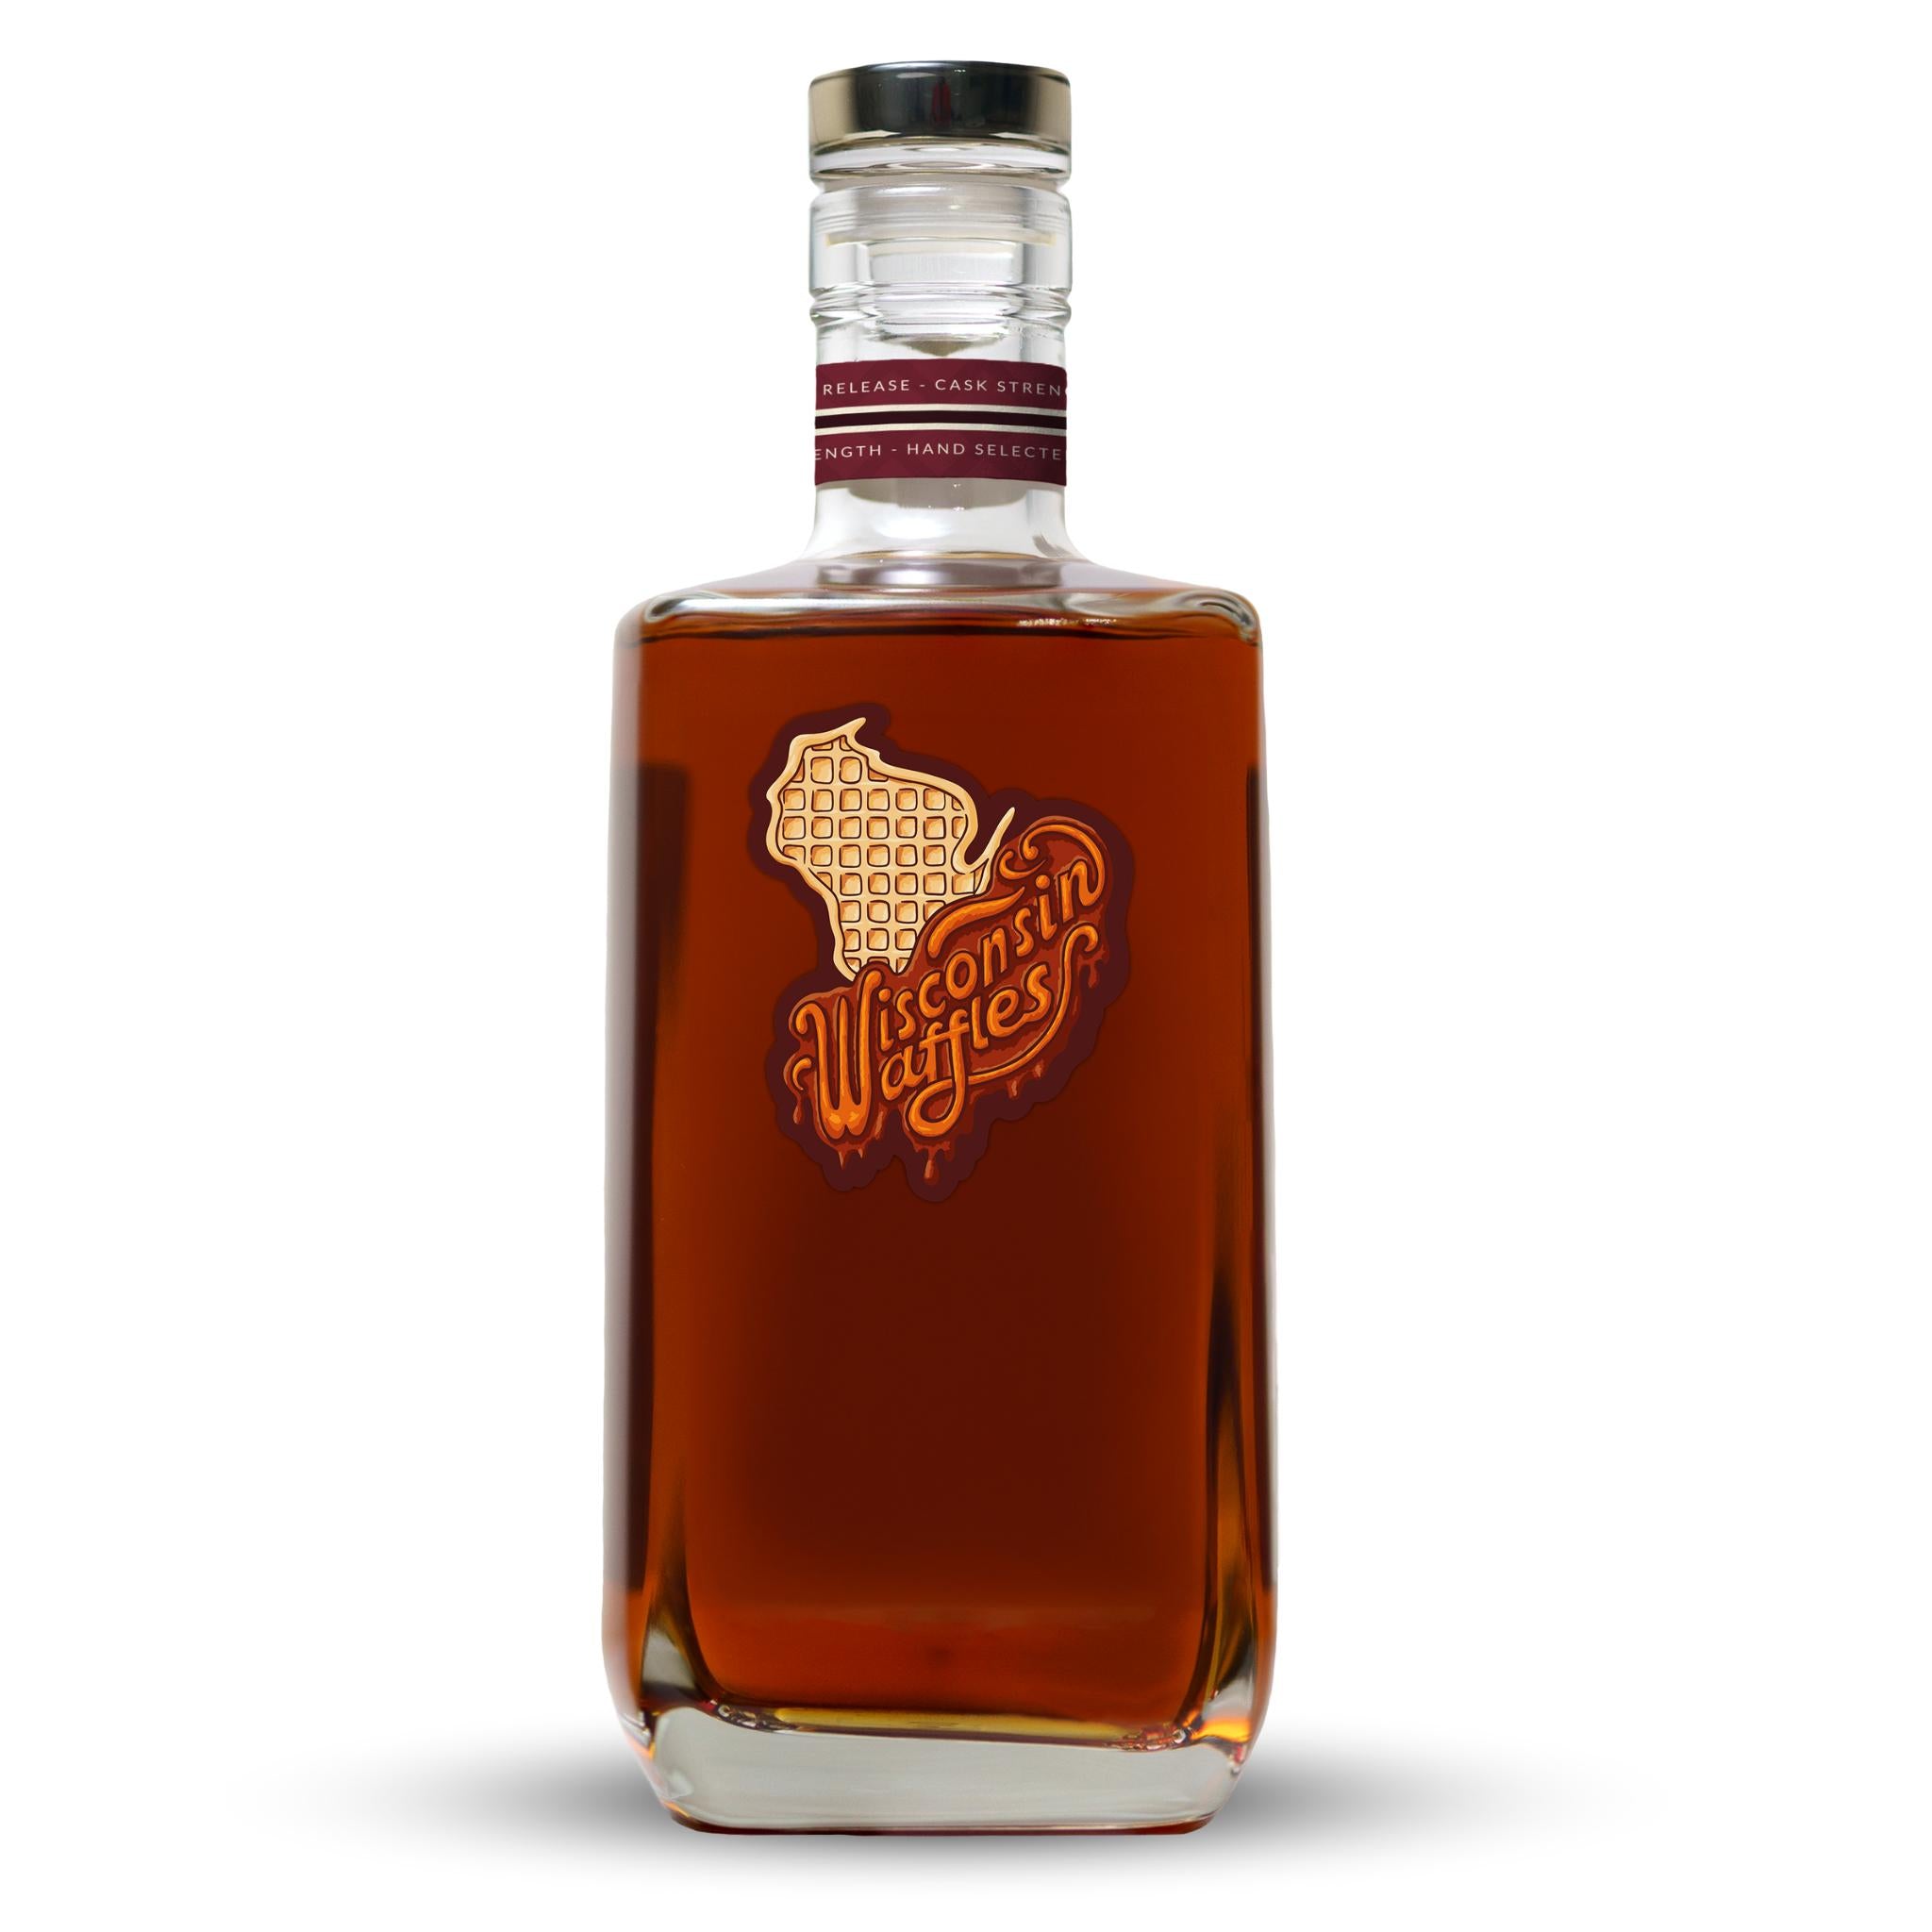 6-Year Wisconsin Straight Rye Whiskey Featuring Wollersheim Distillery